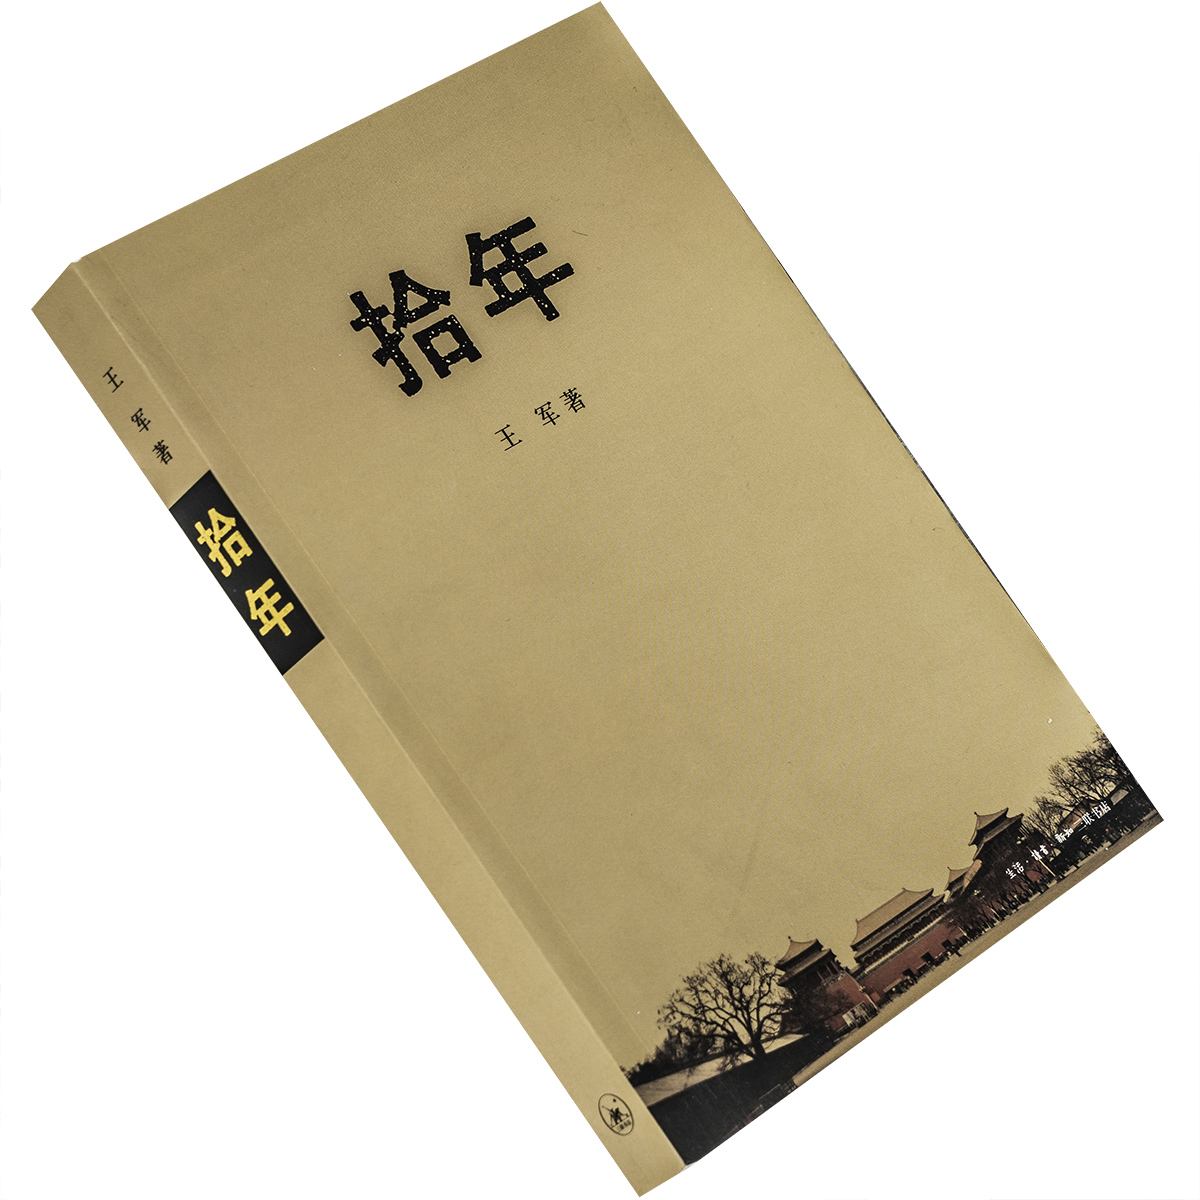 拾年 王军 北京 城记 中国城市发展三部曲 三联书店 正版书籍 老版